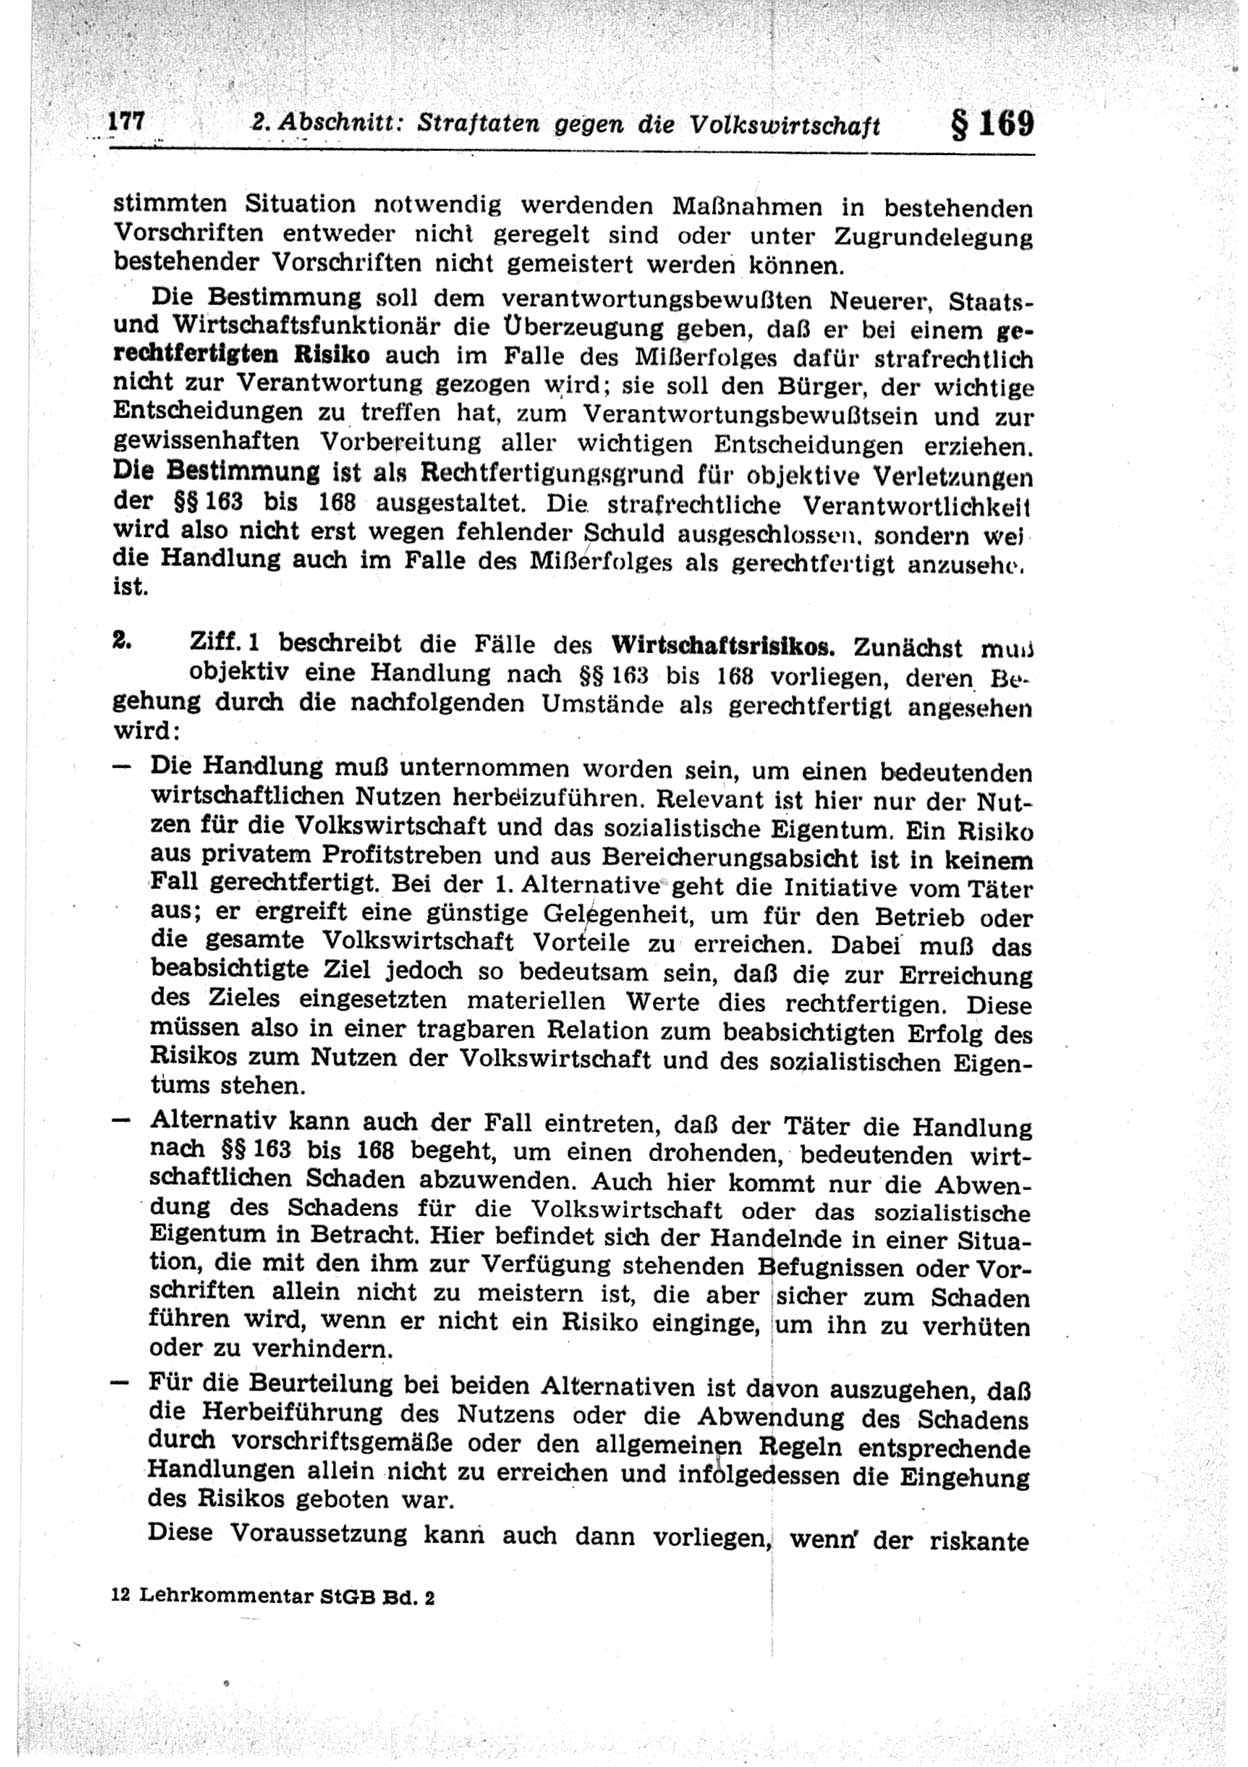 Strafrecht der Deutschen Demokratischen Republik (DDR), Lehrkommentar zum Strafgesetzbuch (StGB), Besonderer Teil 1969, Seite 177 (Strafr. DDR Lehrkomm. StGB BT 1969, S. 177)